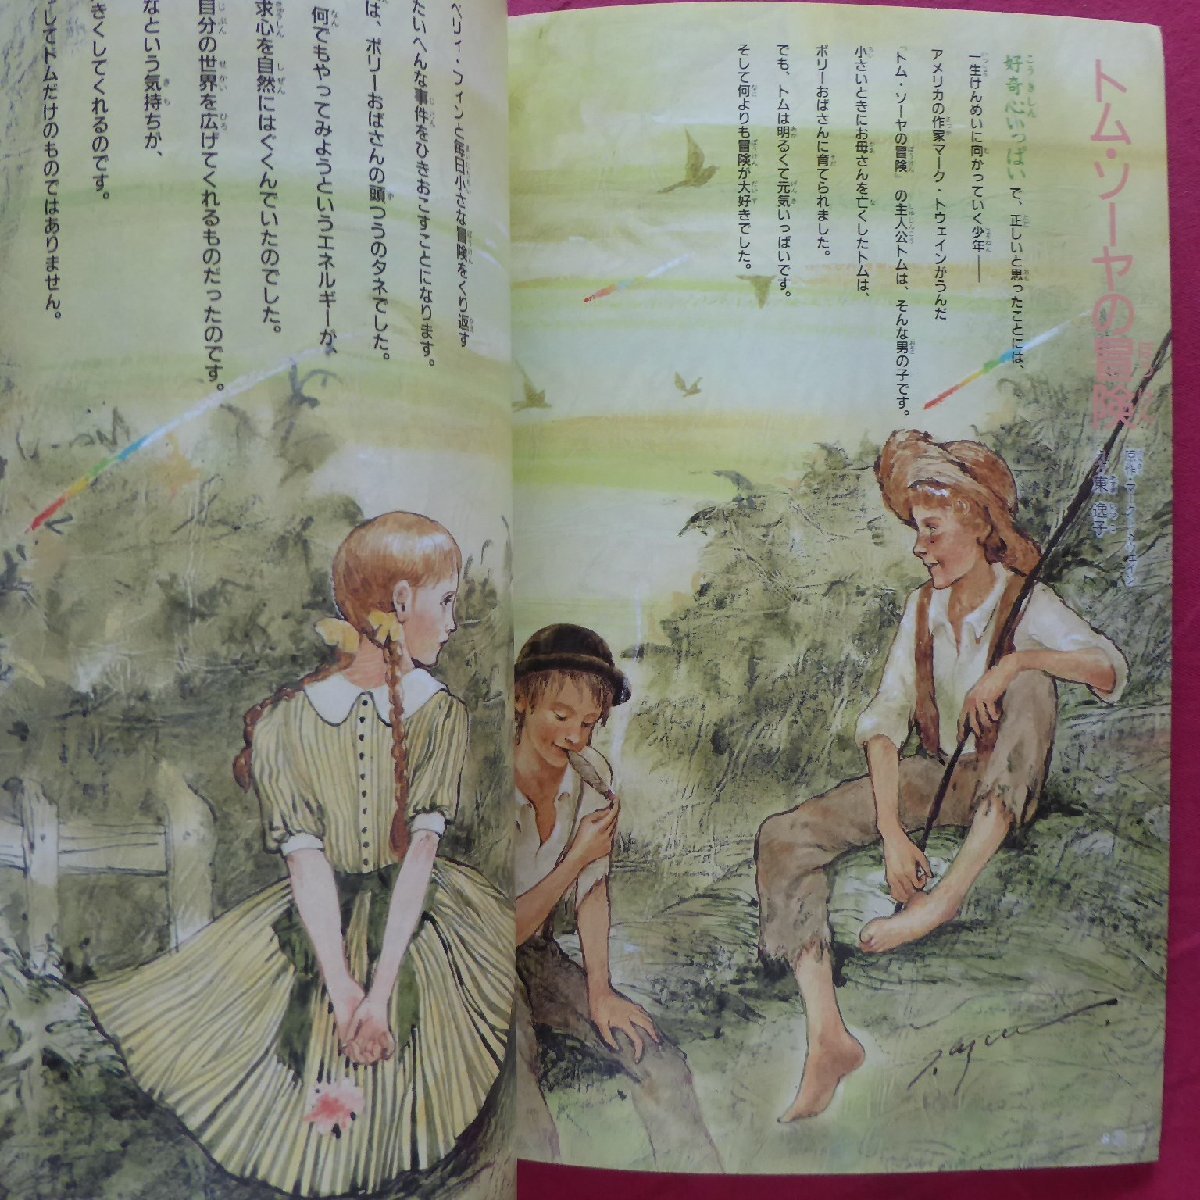 z32/ Sanrio сказка журнал [ клубника ...]..8 месяц номер [ специальный выпуск :..... приключение . добро пожаловать ] Muramatsu Tomomi /. рисовое поле ..